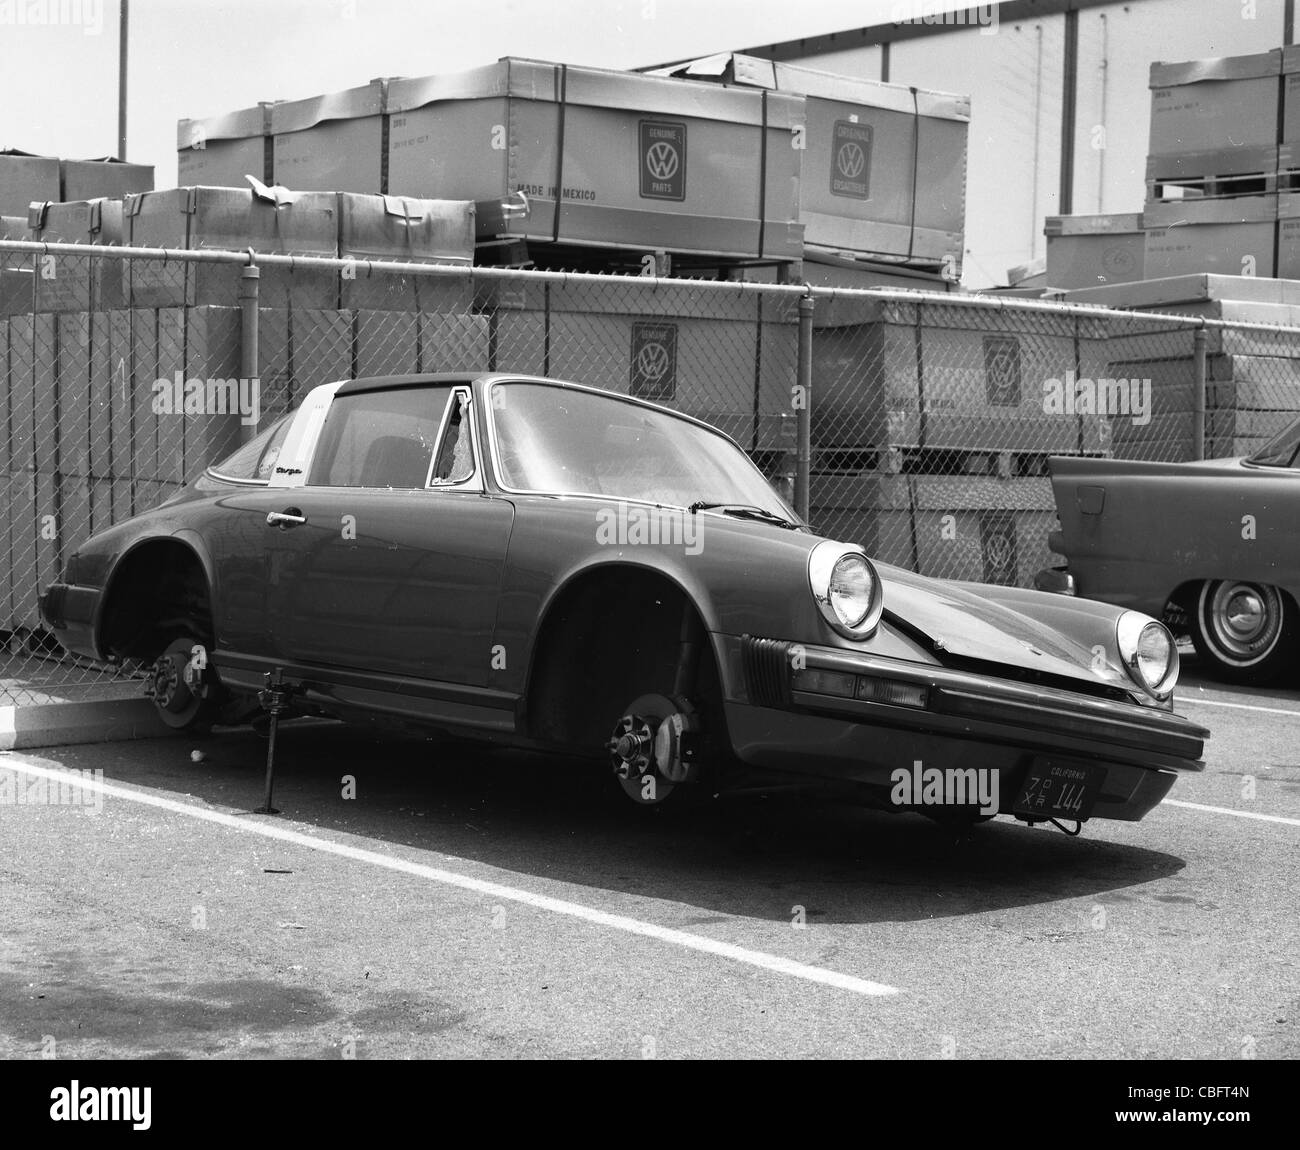 Porsche Carrera 1970 modelo estacionado con ruedas que faltan autos deportivos alemán Foto de stock